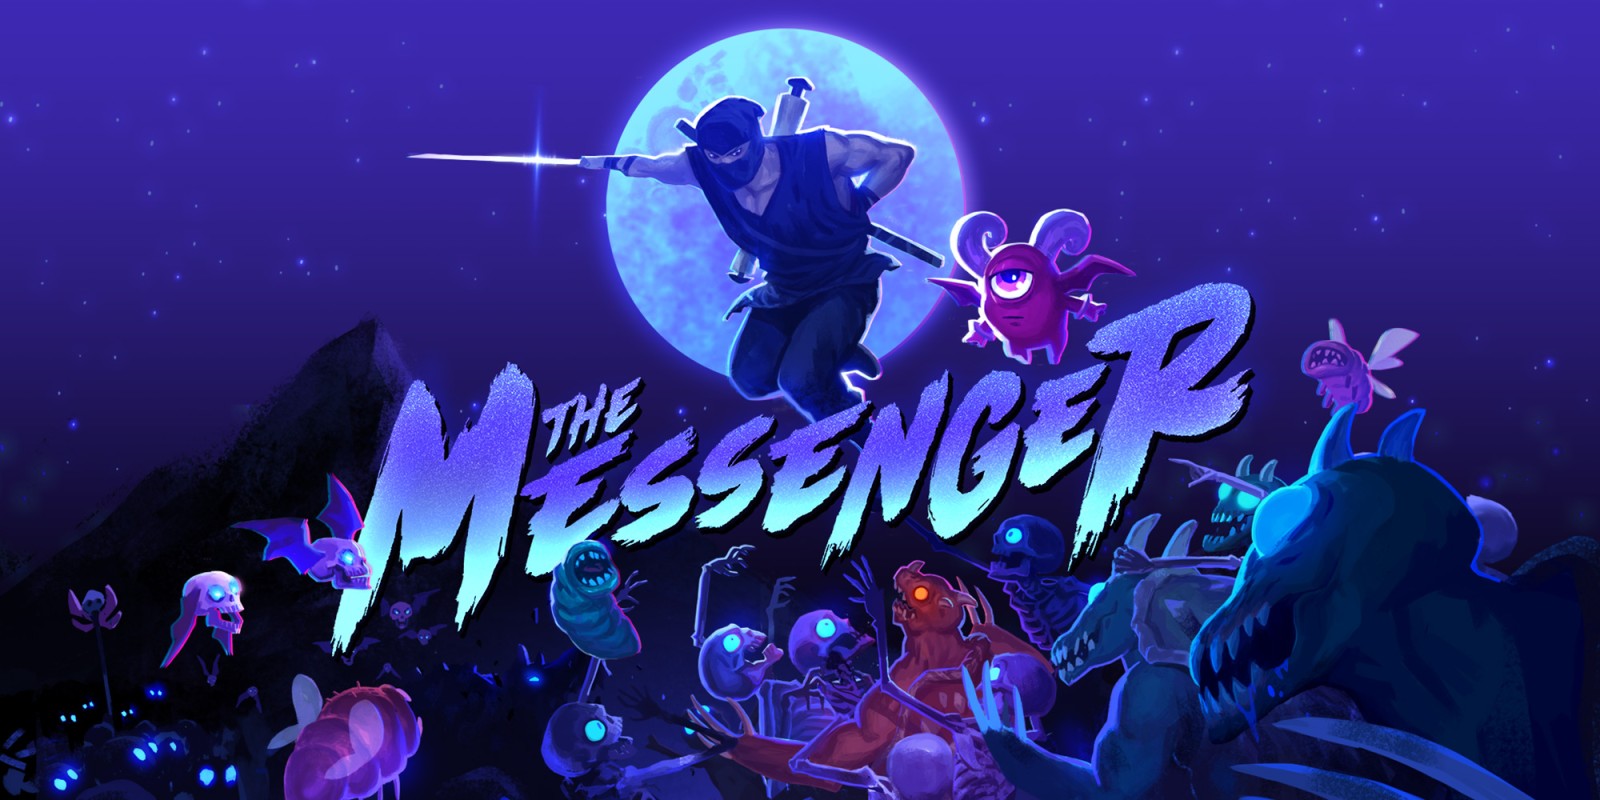 Svelata la data d’uscita per il DLC di The Messenger su Nintendo Switch